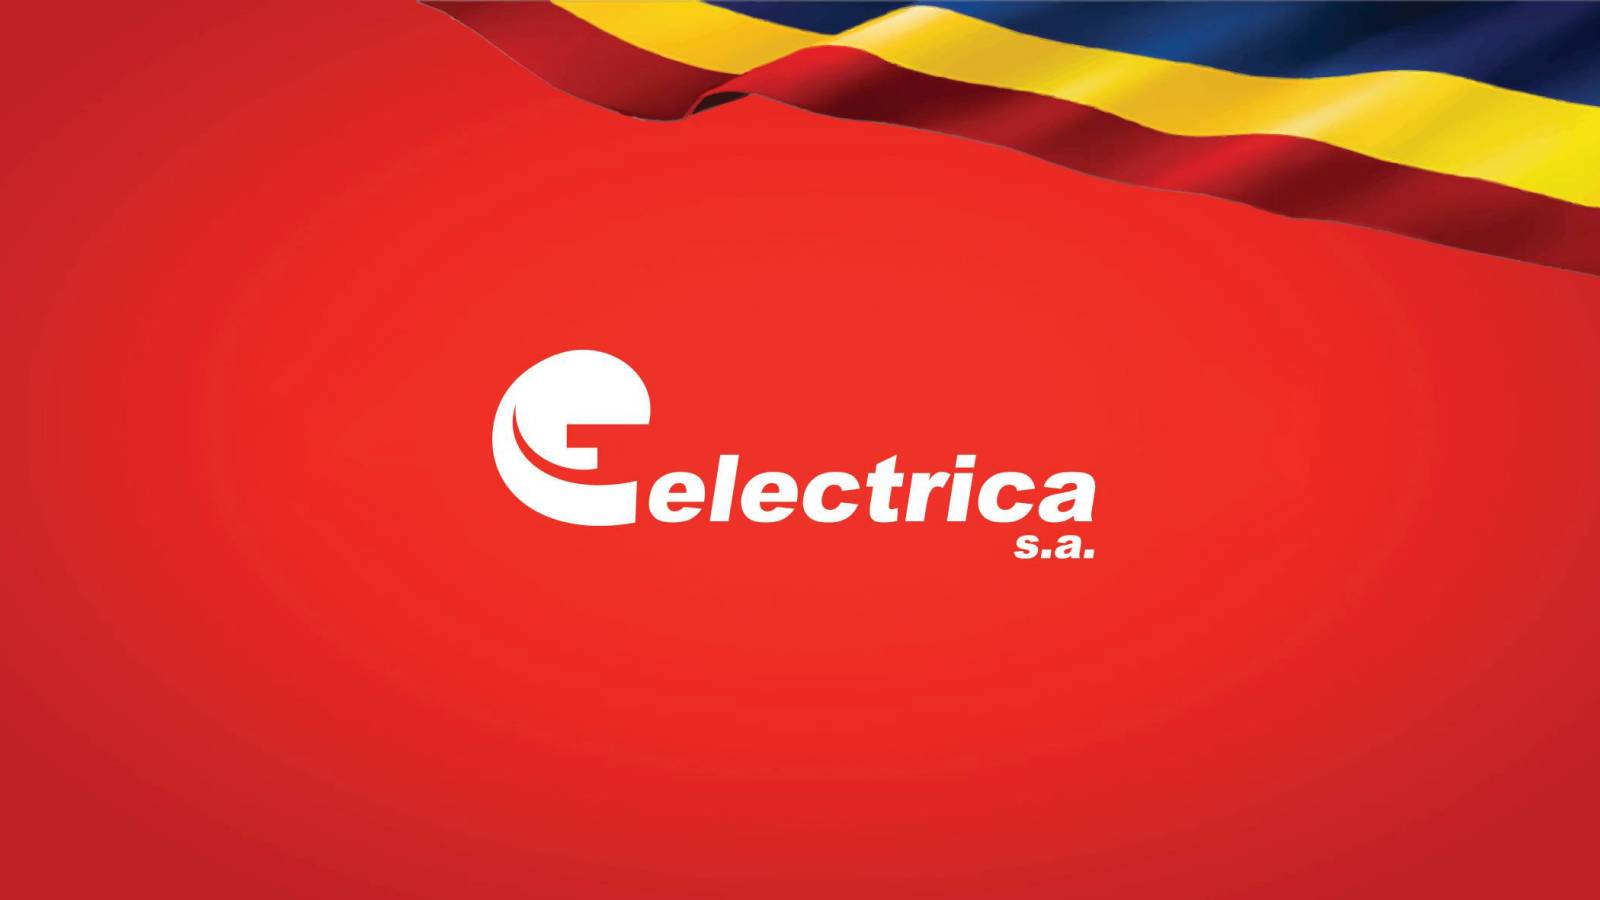 Oficjalny komunikat ELECTRICA W OSTATNIEJ CHWILI UWAGA Rumuni W całym kraju